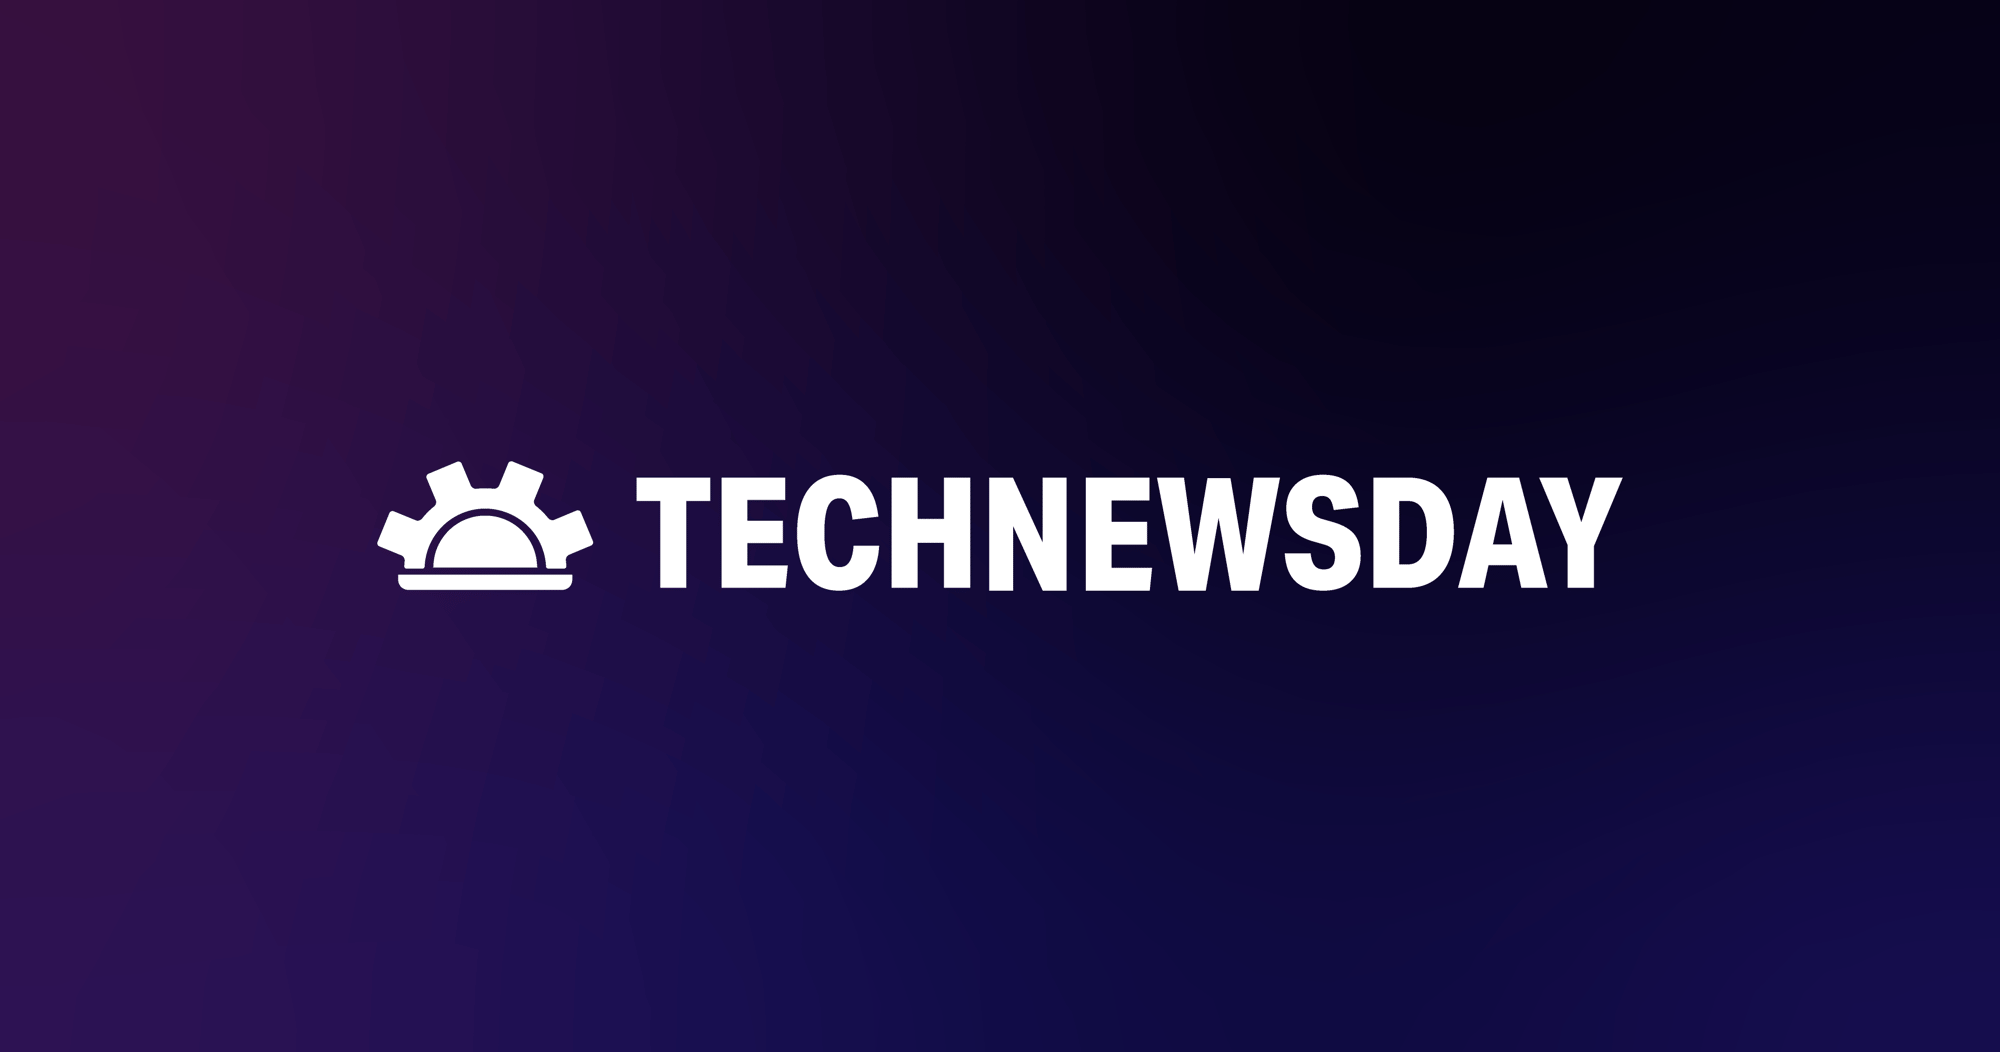 Legit Security-Technewsday